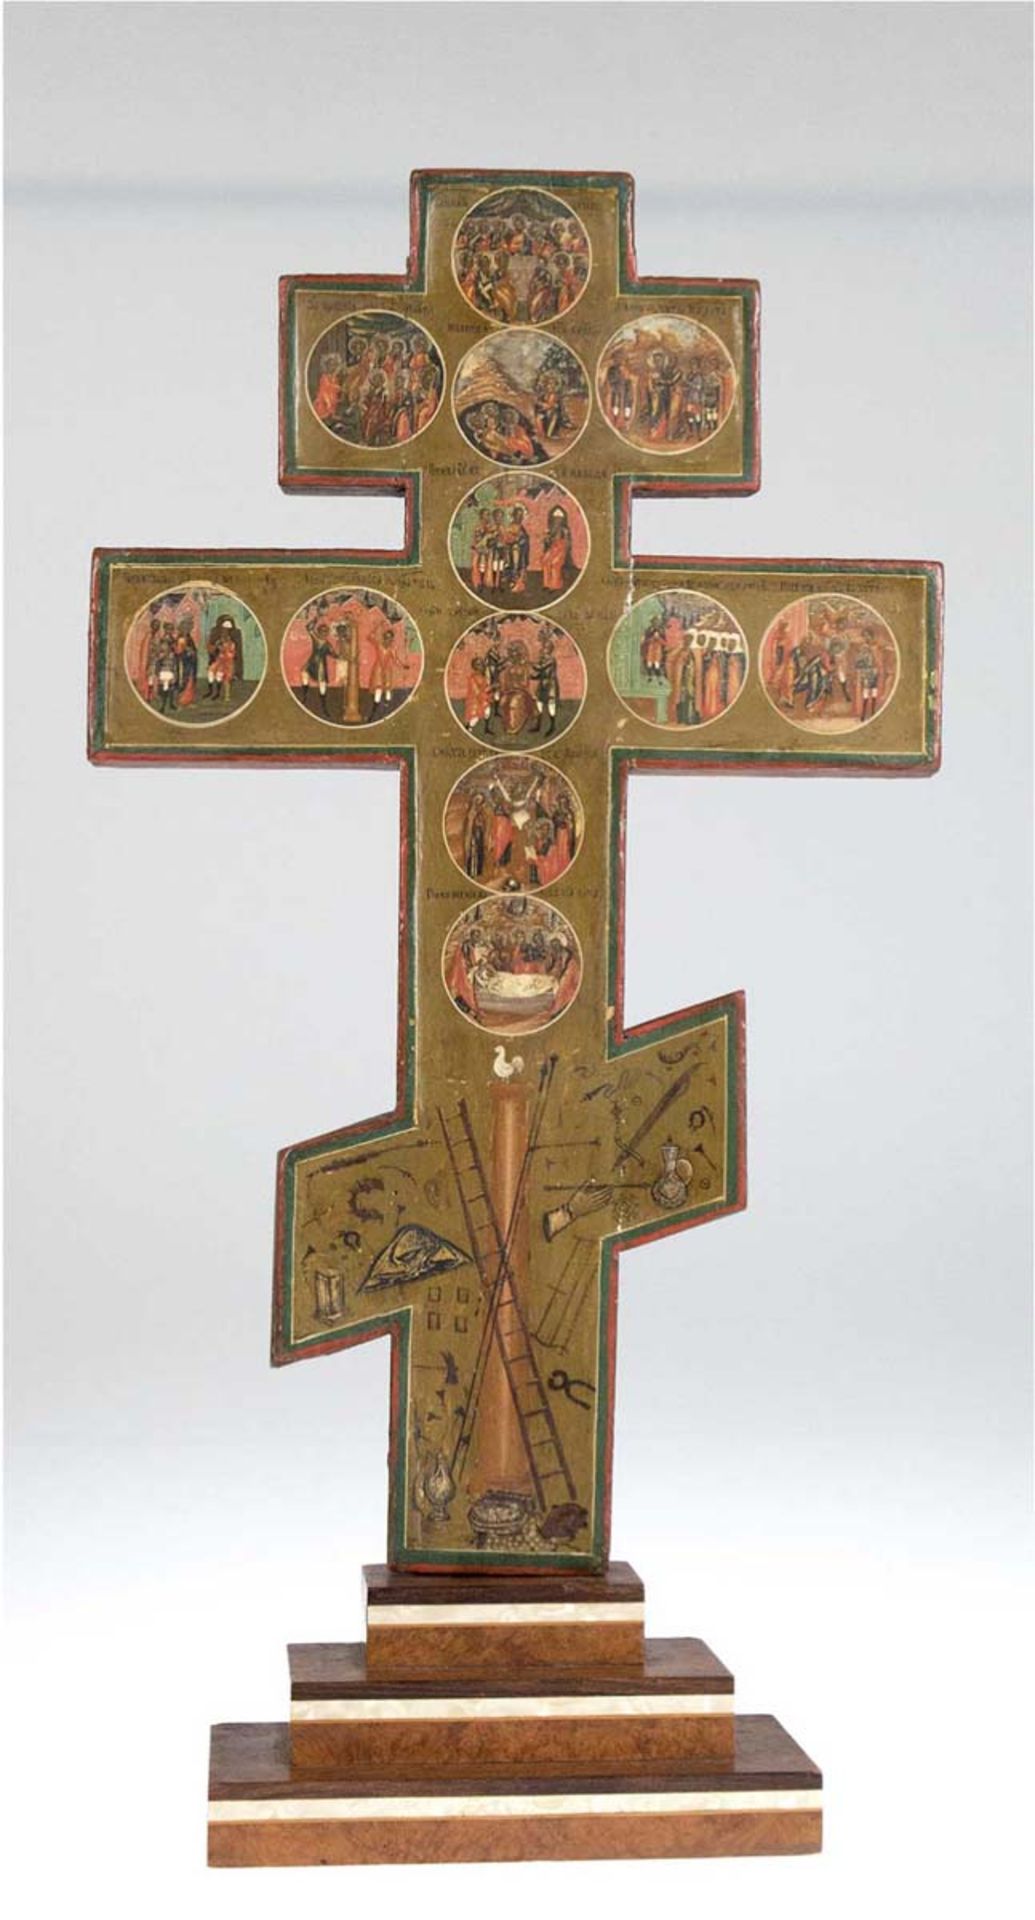 Prozessionskreuz, Ende 18. Jh., Ei/Öl/Tempera auf Holz, doppelseitig bemalt mitFesttagsthemen, auf